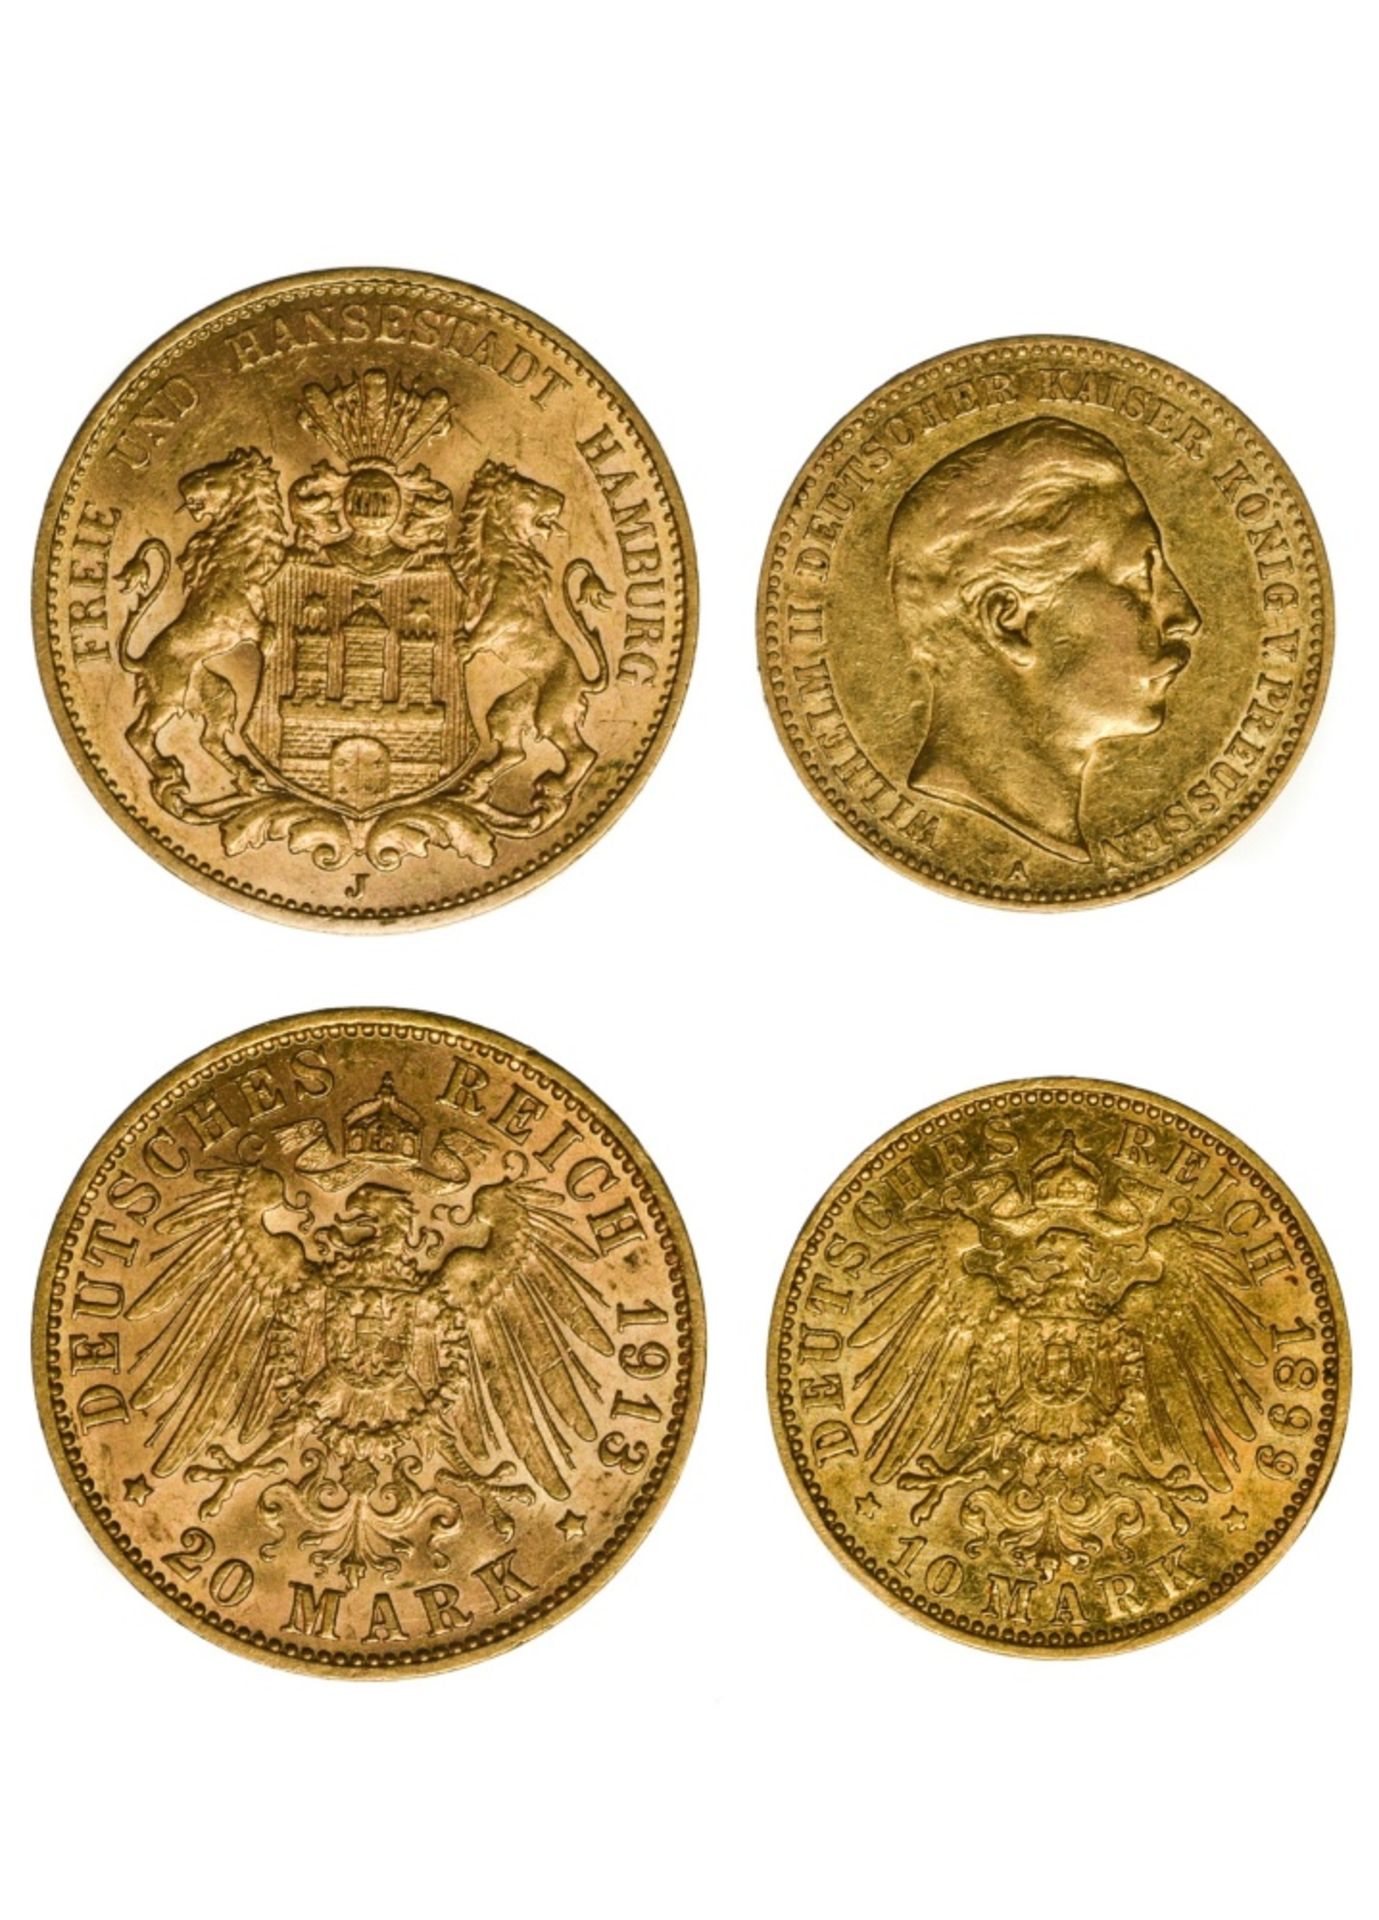 Germany Hamburg, 20 Mark, 1913 J ; Prussia, 10 Mark, 1899 A (Fr.3777, 3835 ; KM.520, 618). 20